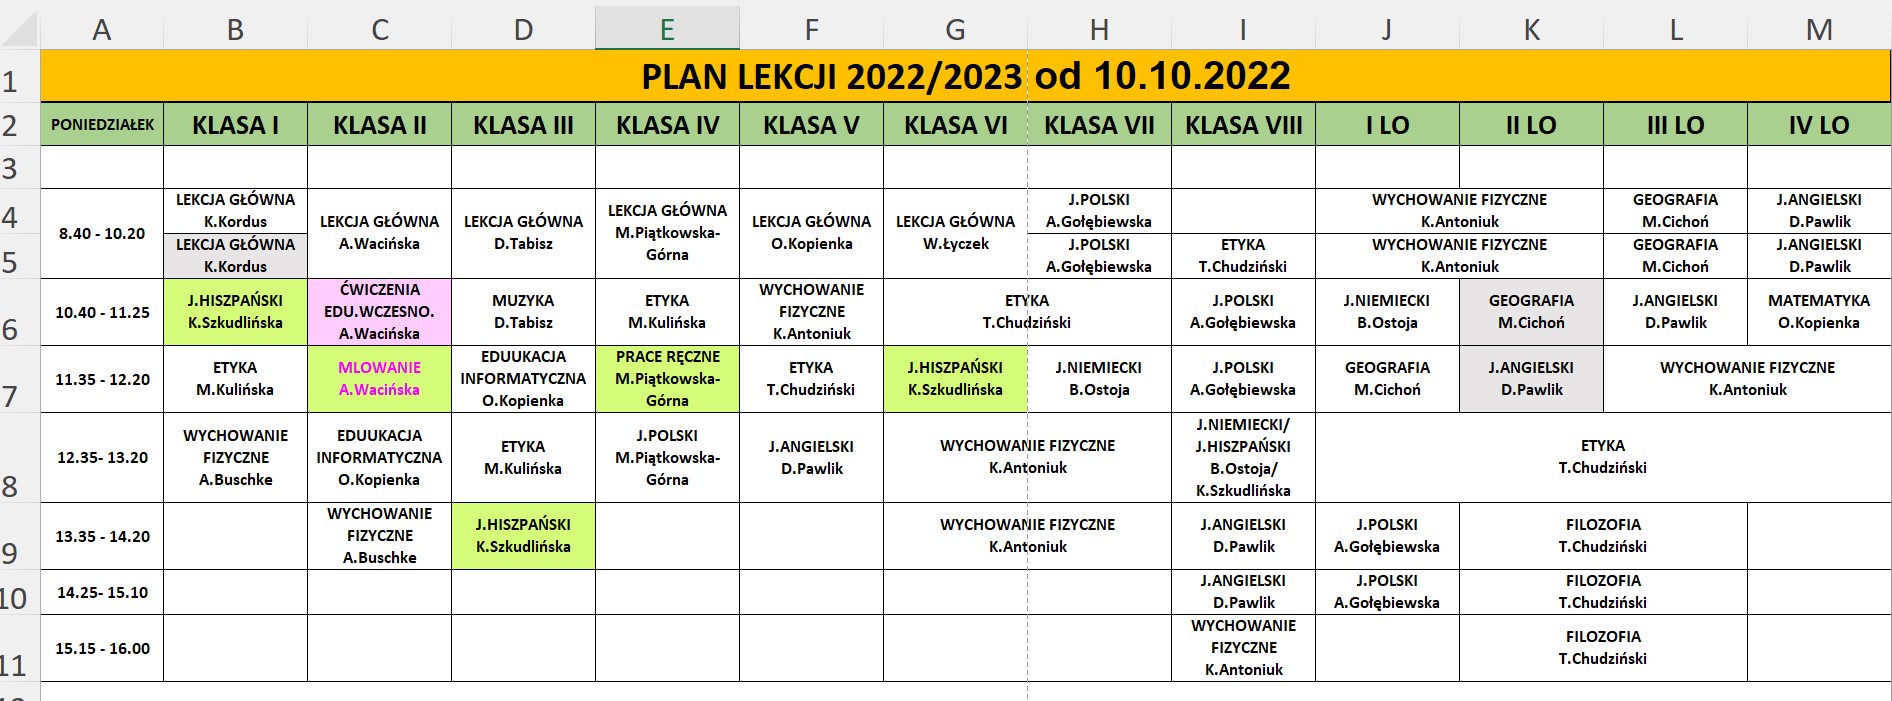 Zrzut ekranu planu lekcji